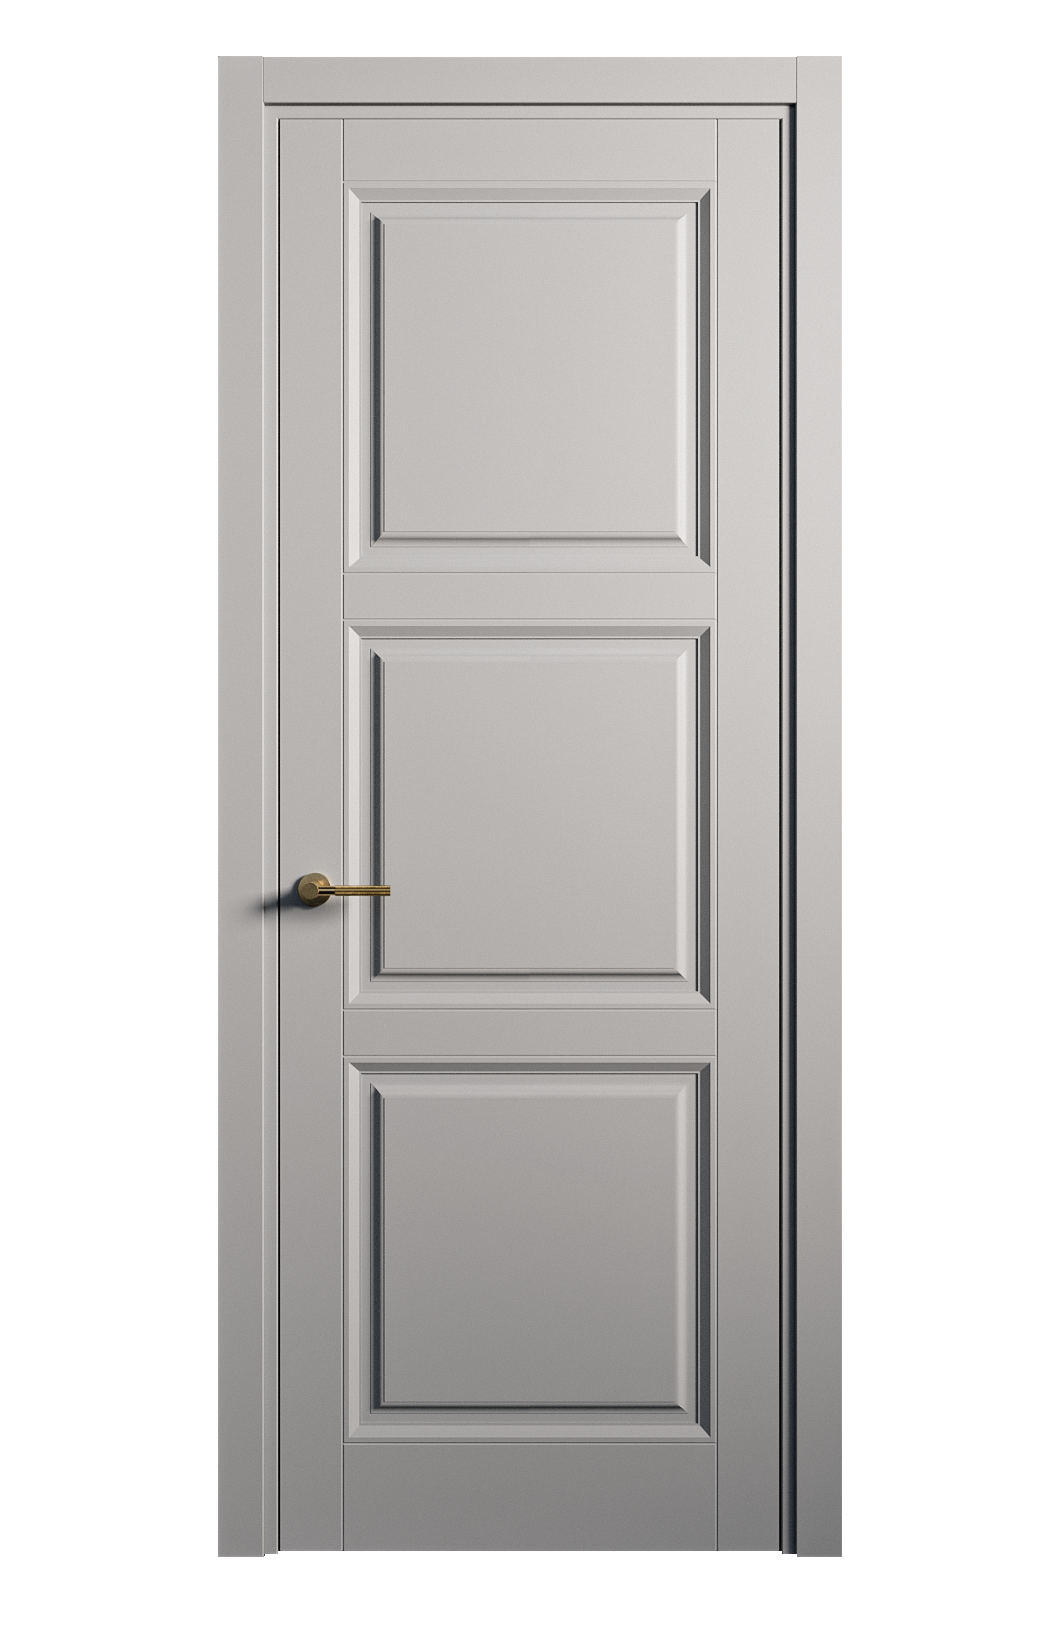 Межкомнатная дверь Venezia-3 глухая эмаль ral 7040 25723